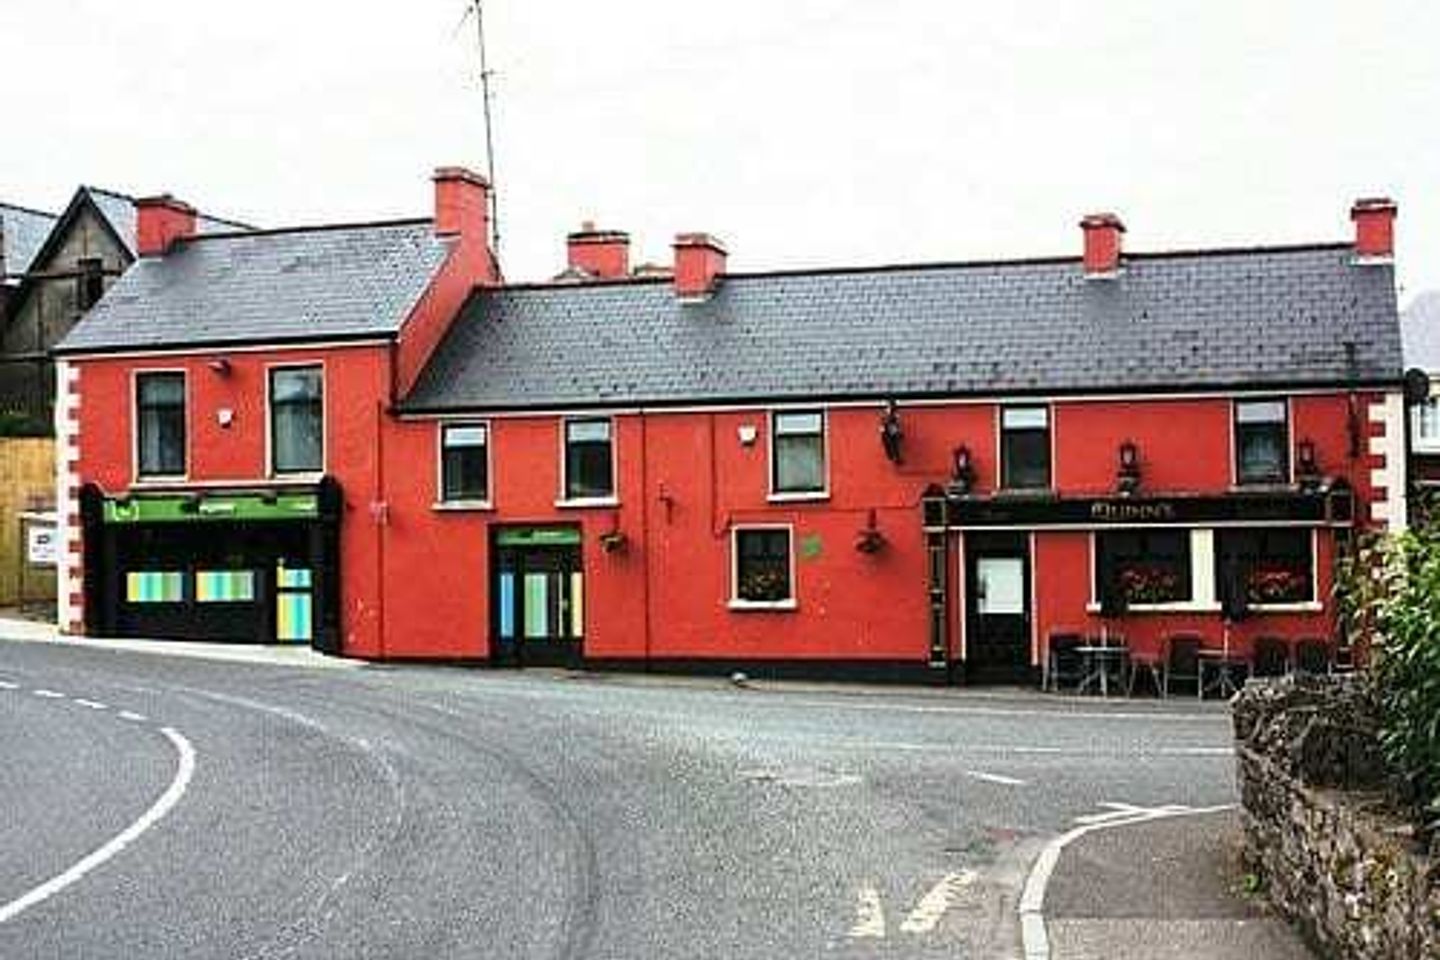 Quinn's Bar & Lounge, Fenagh, Co. Leitrim